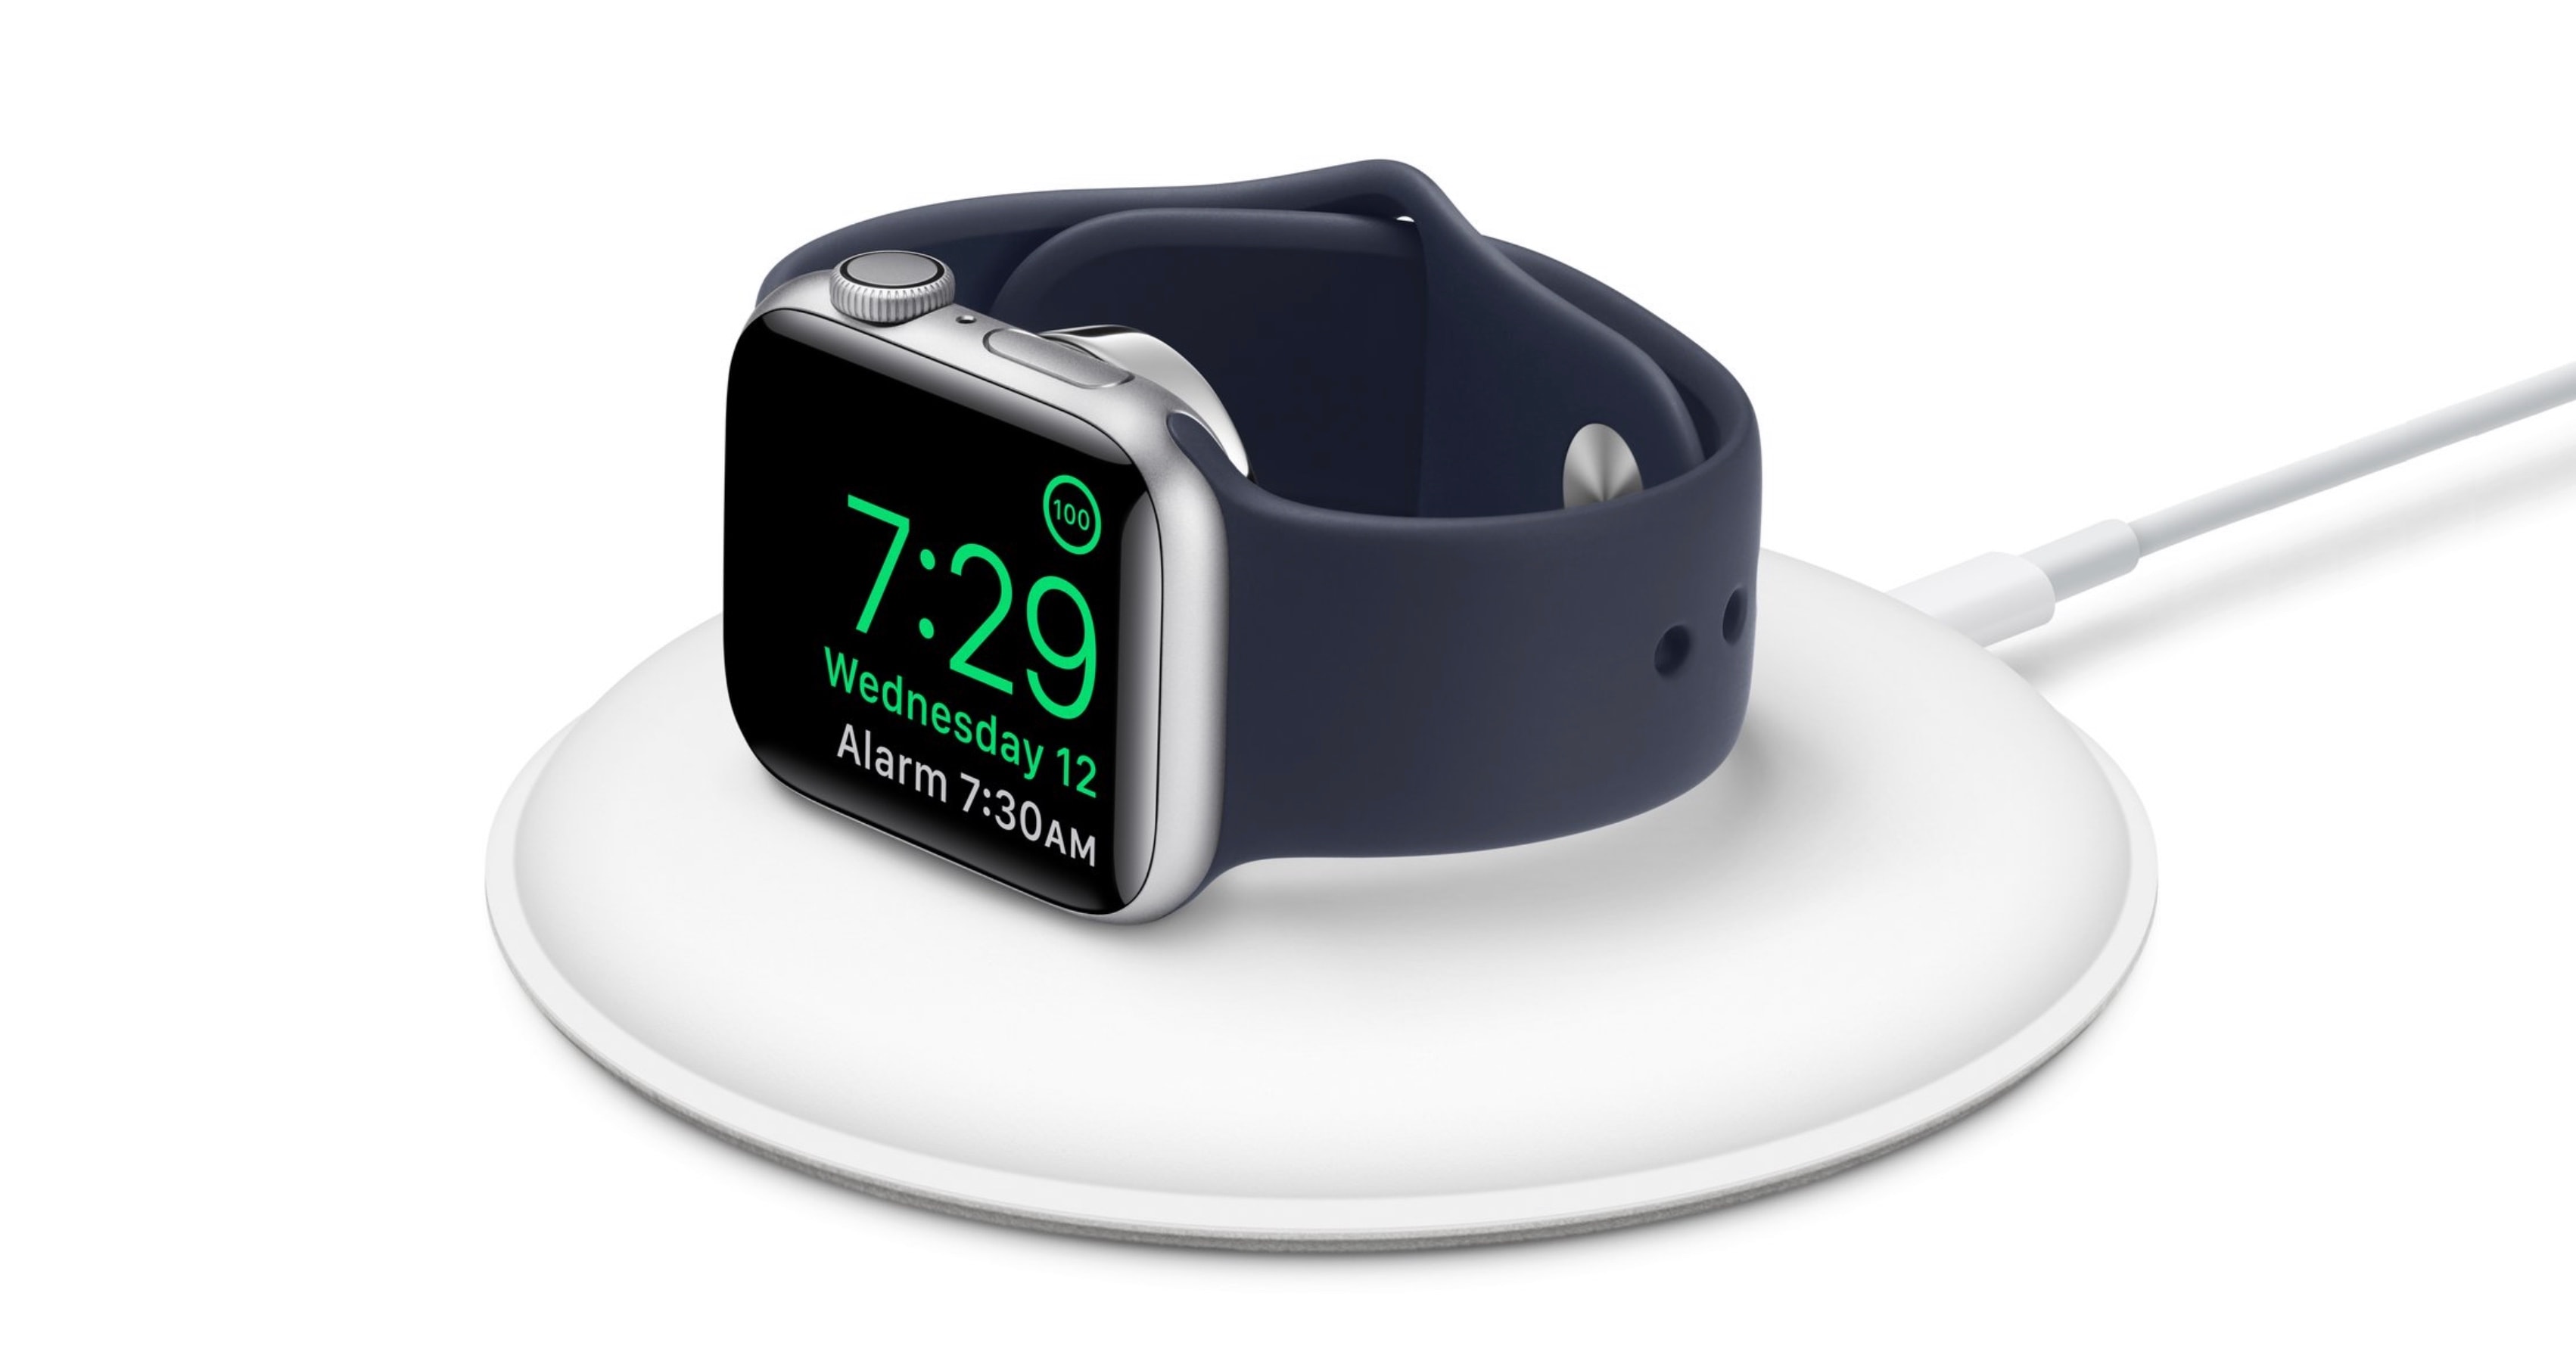 The Apple Watch charging dock just got an update.